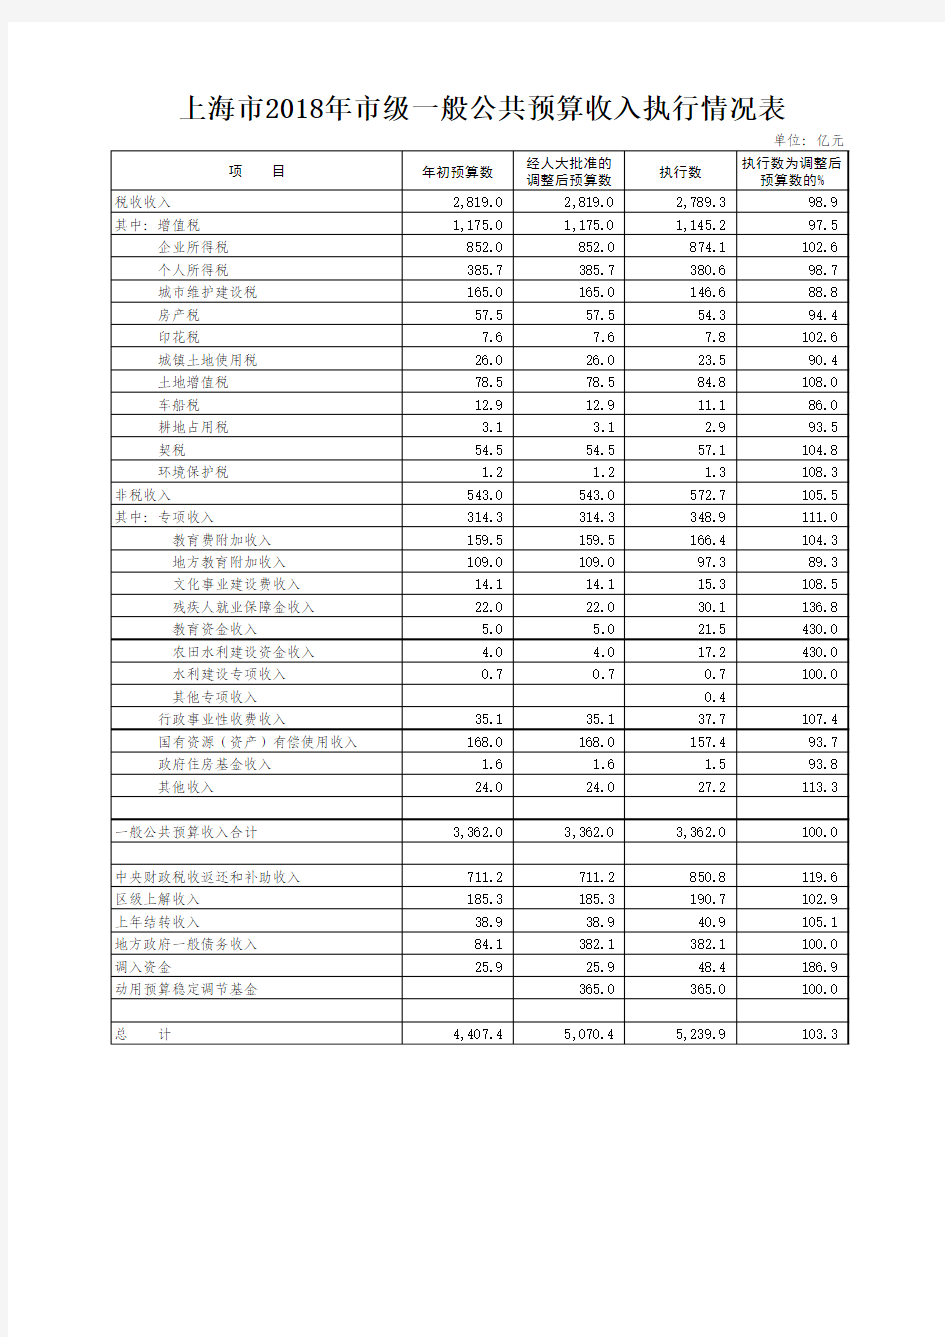 上海市2018年市级一般公共预算收入执行情况表